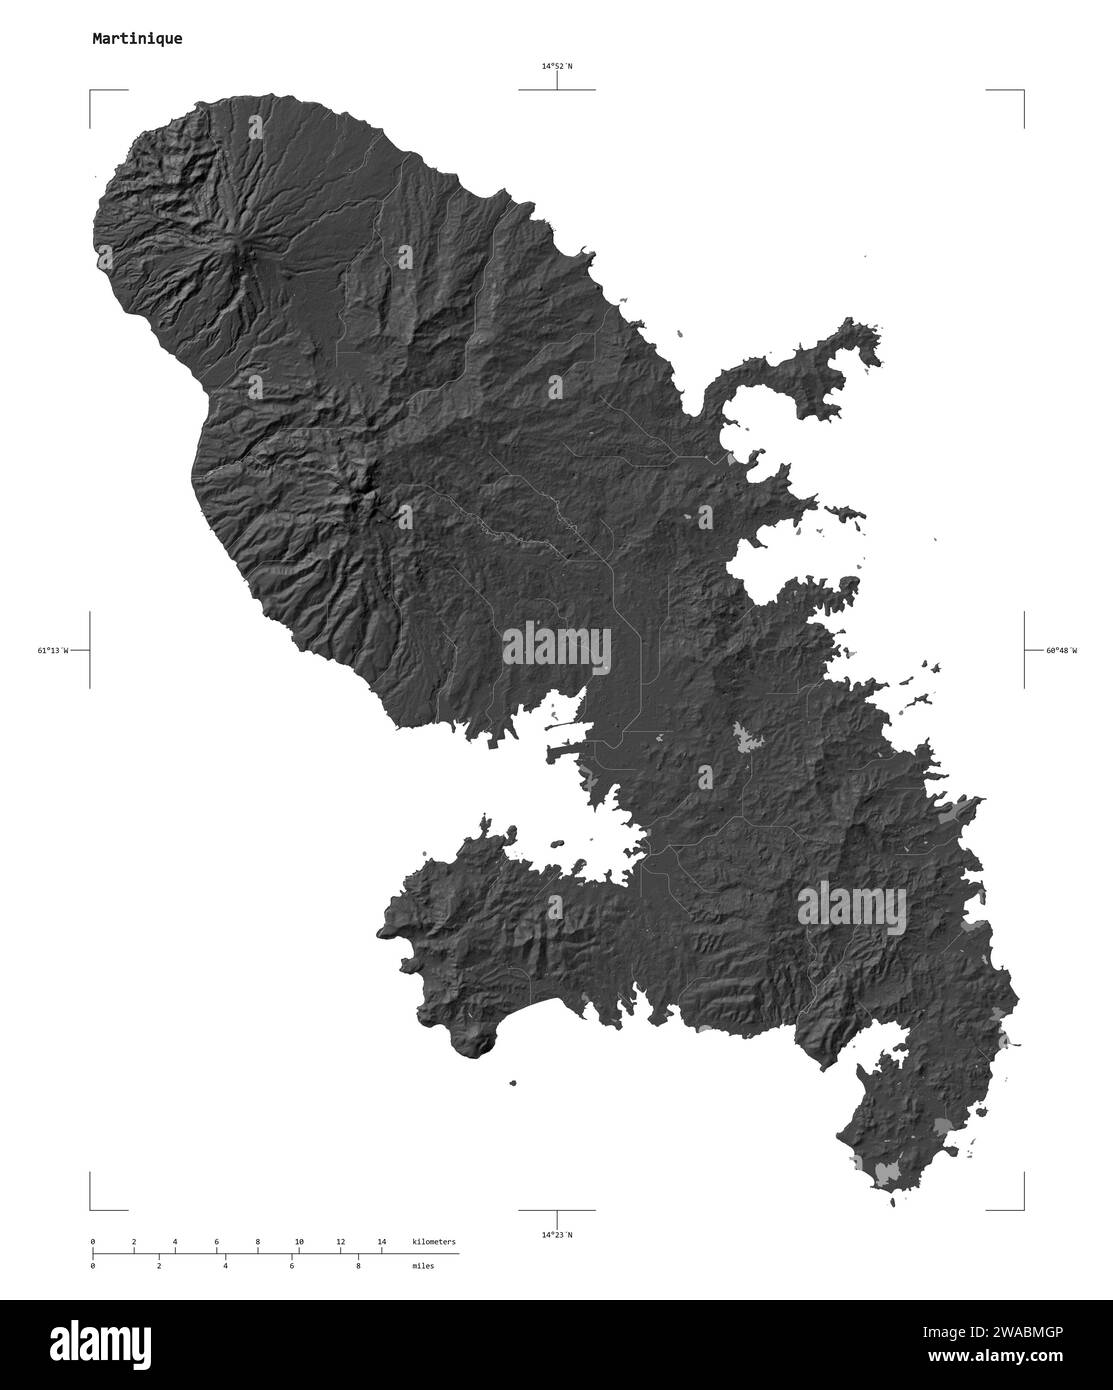 Forme d'une carte d'altitude à deux niveaux avec les lacs et rivières de la Martinique, avec échelle de distance et coordonnées de la frontière de la carte, isolé sur blanc Banque D'Images